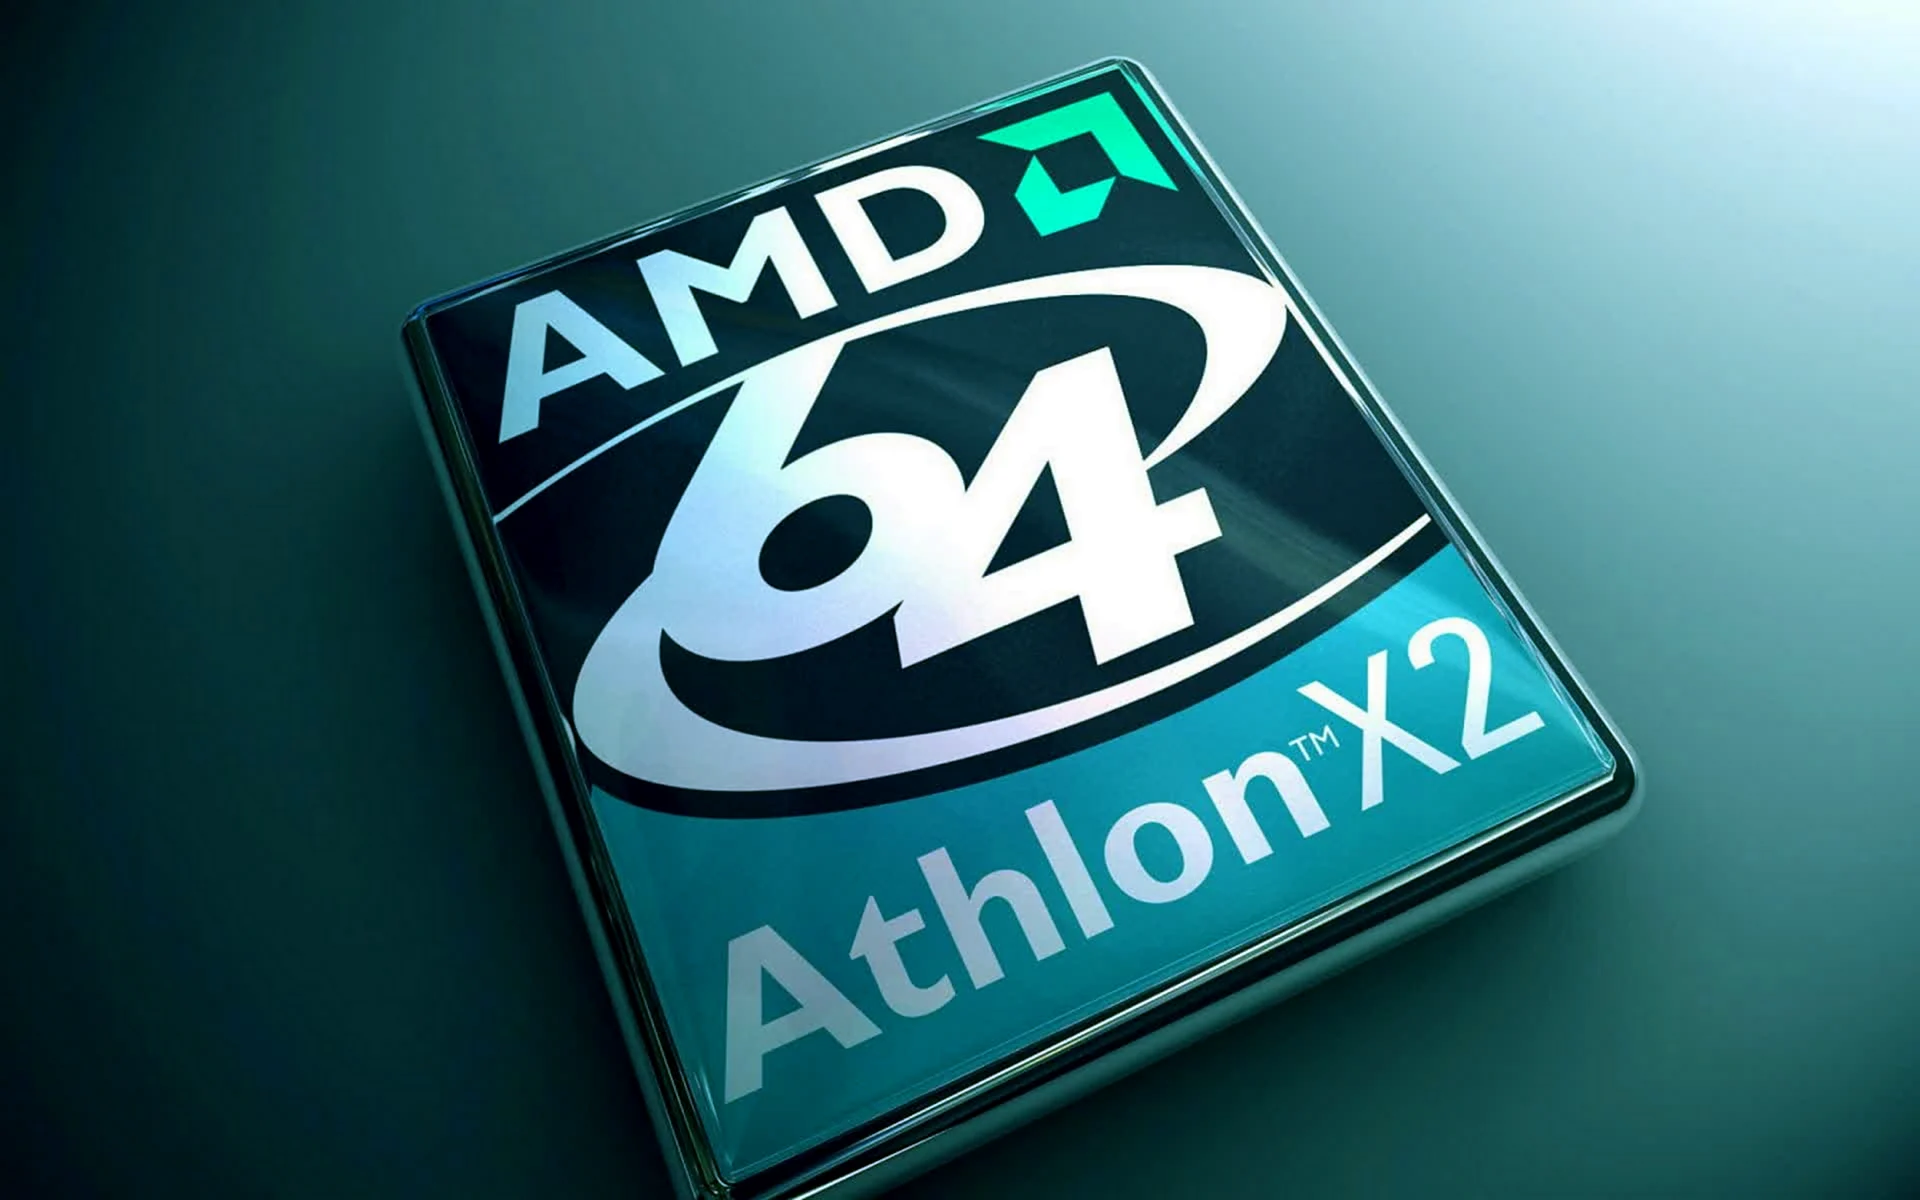 AMD Athlon 64 logo